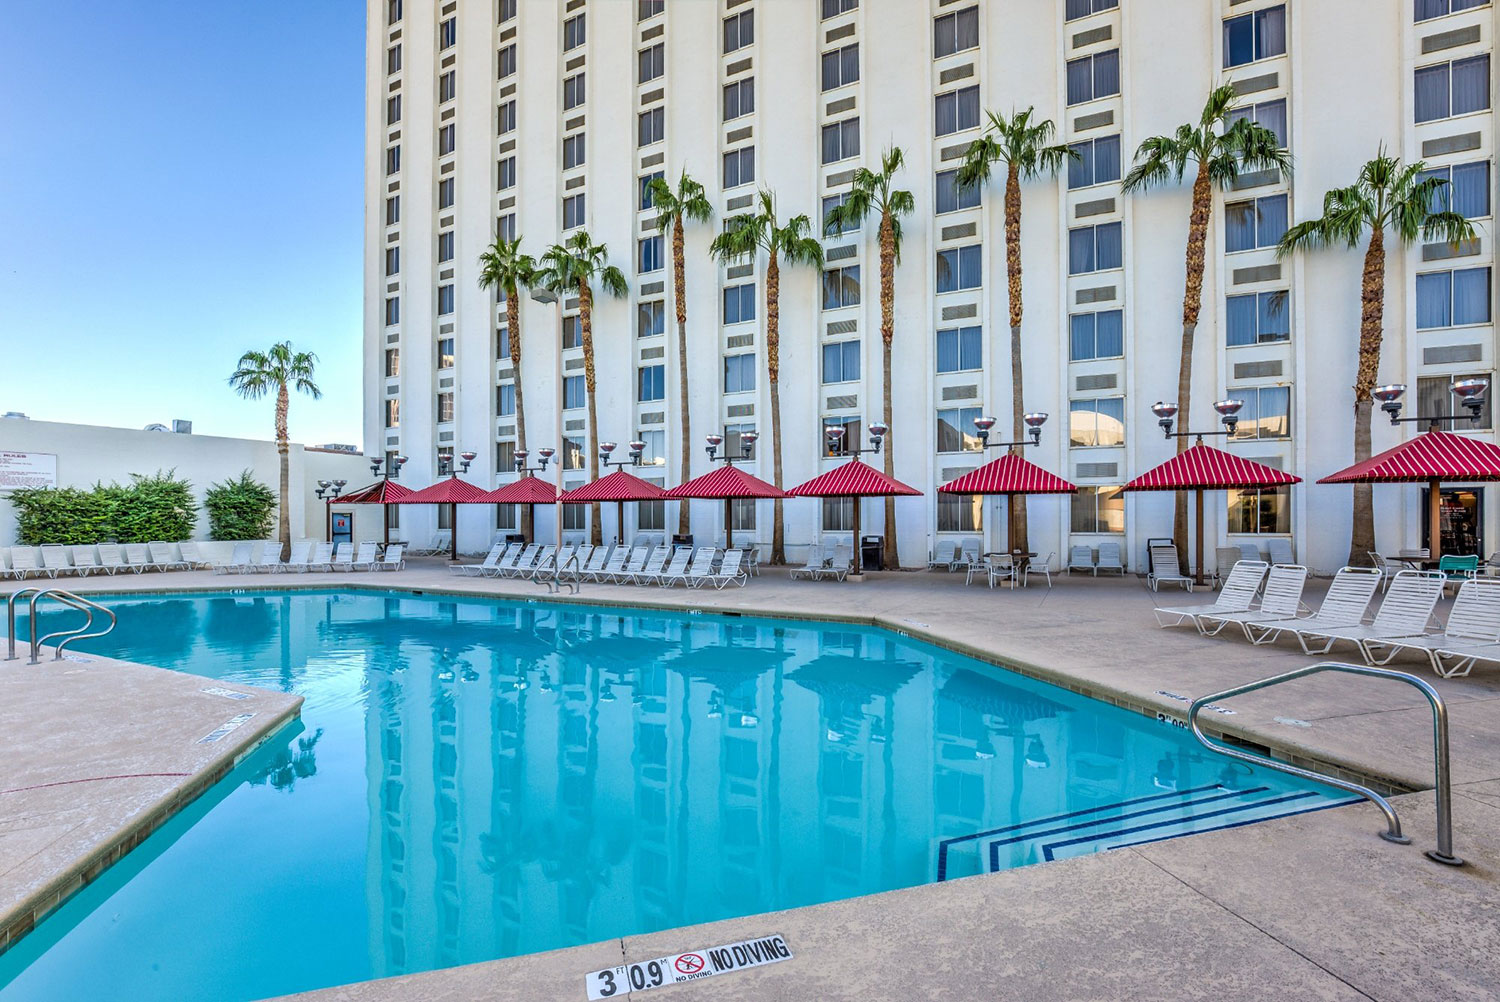 Pool at Edgewater Hotel & Casino Resort